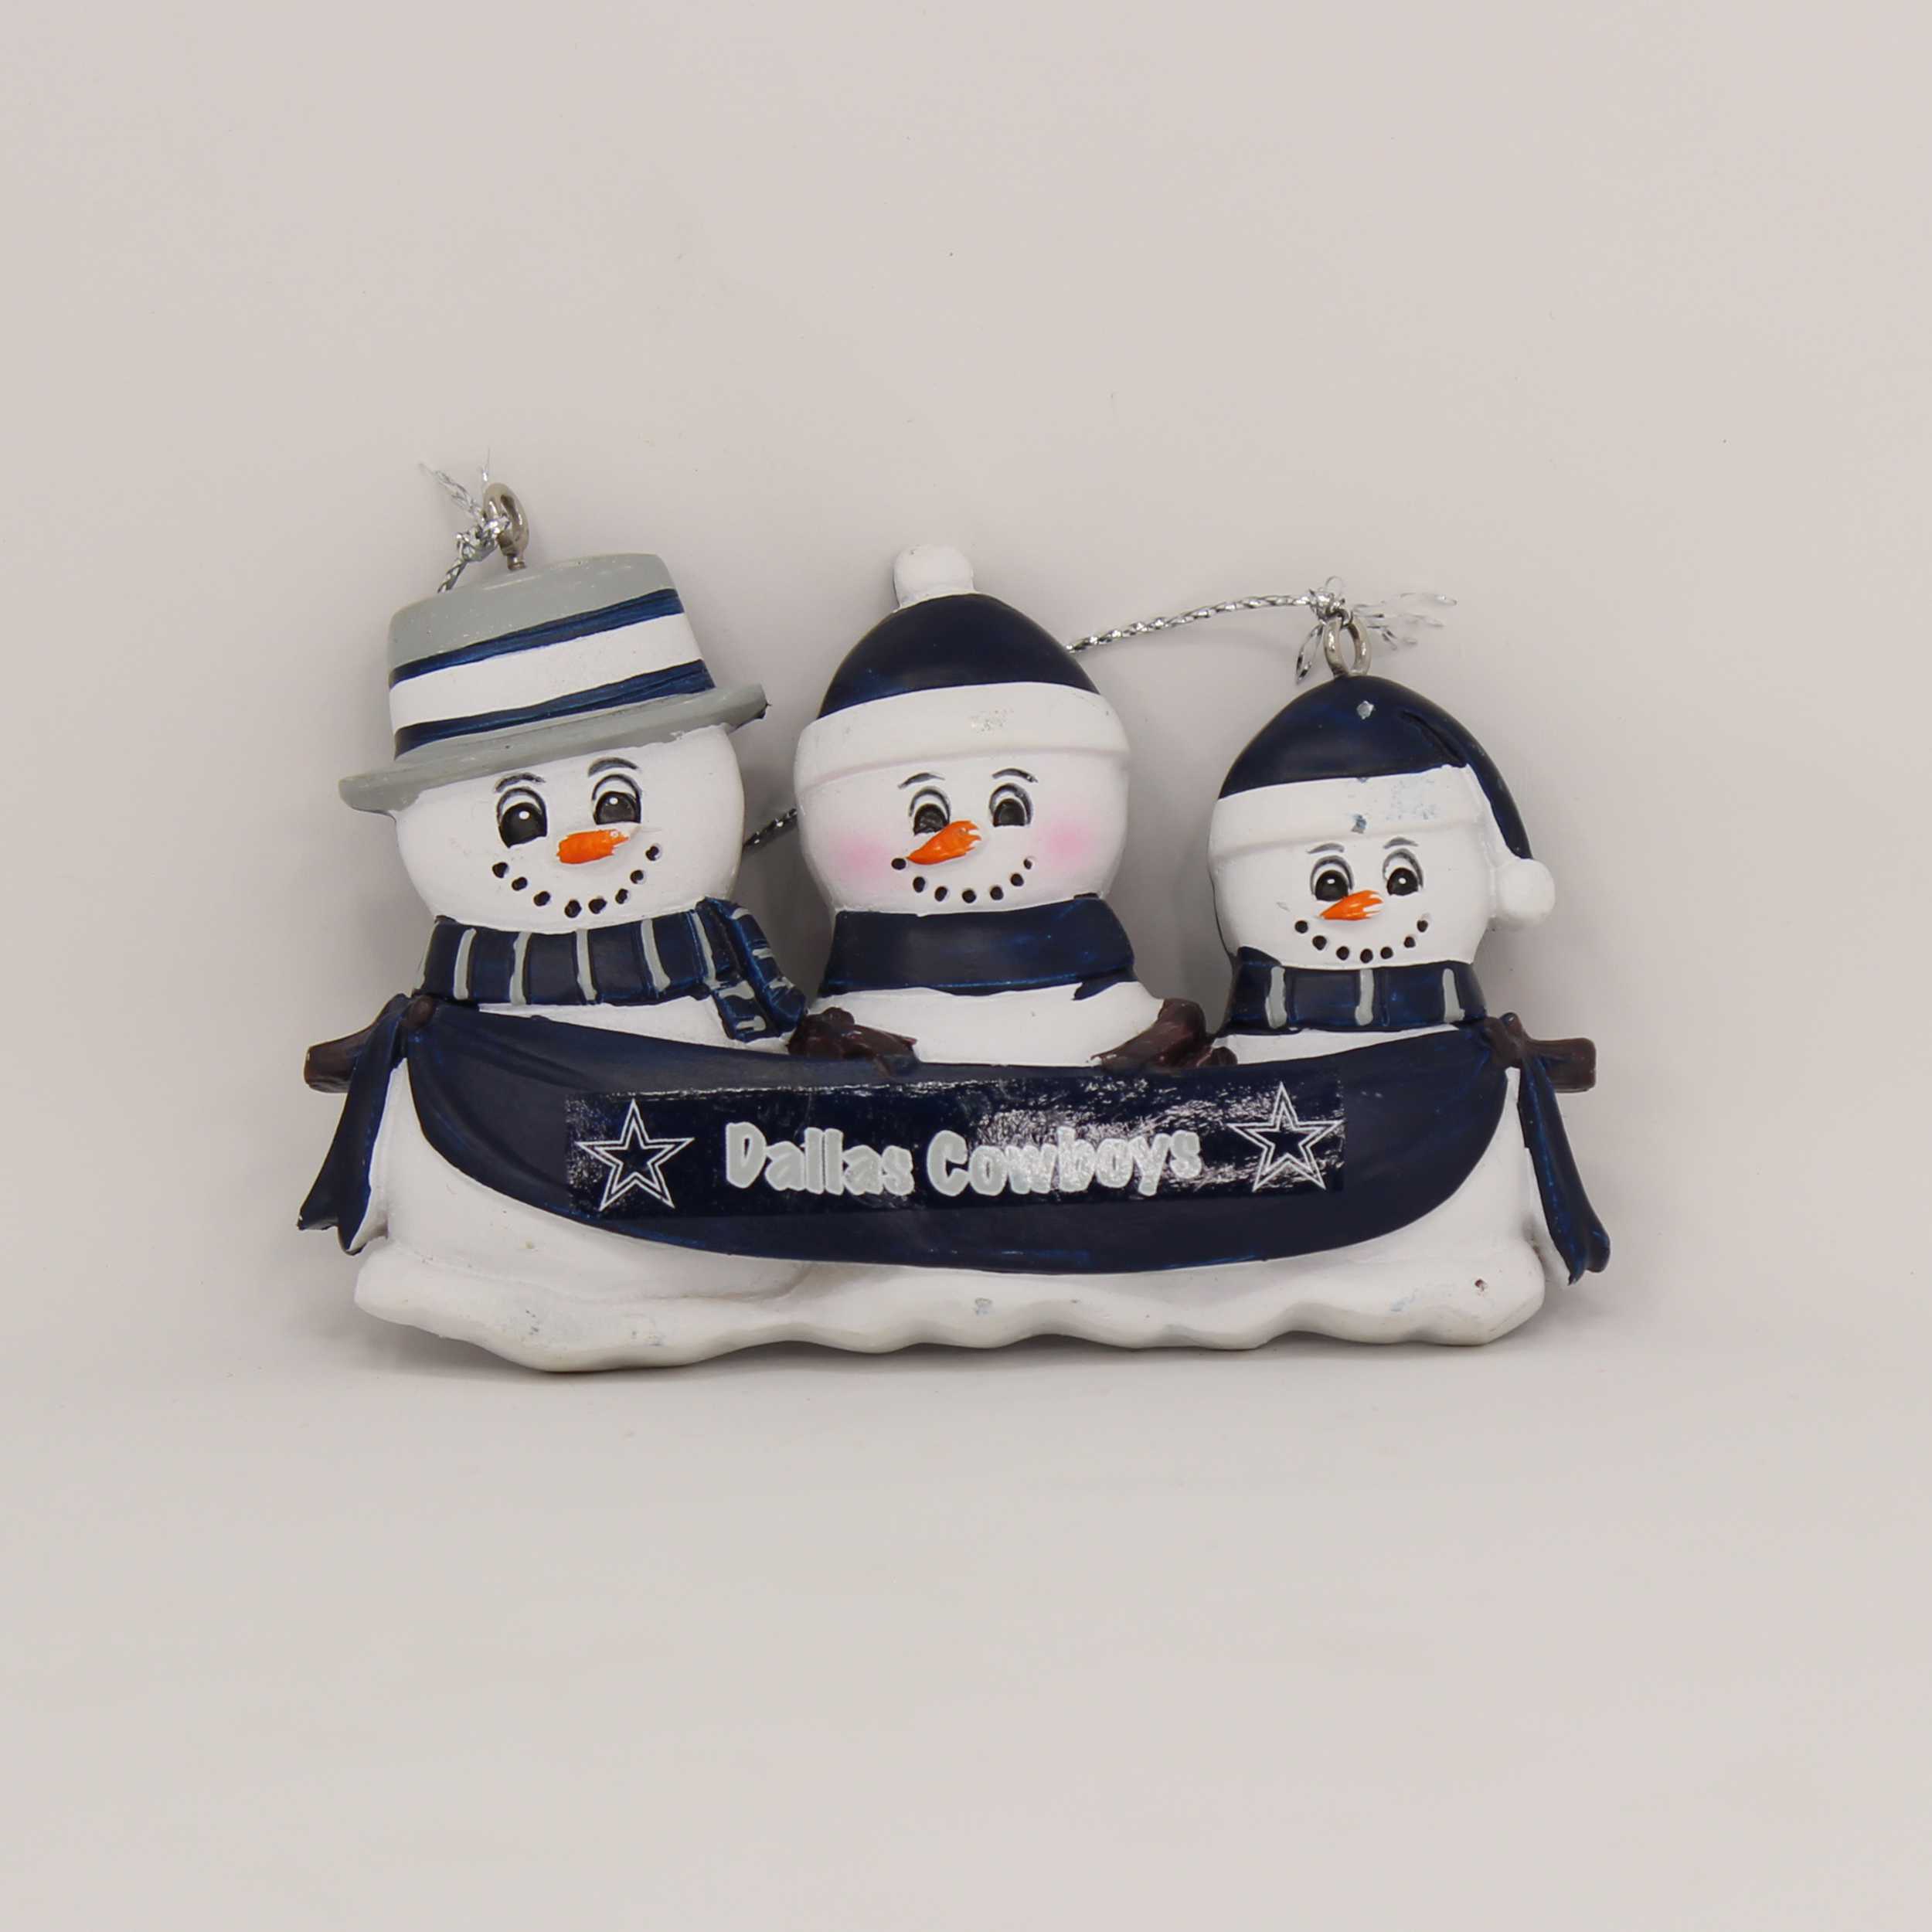 Personalized Family Ornament Dallas Cowboys